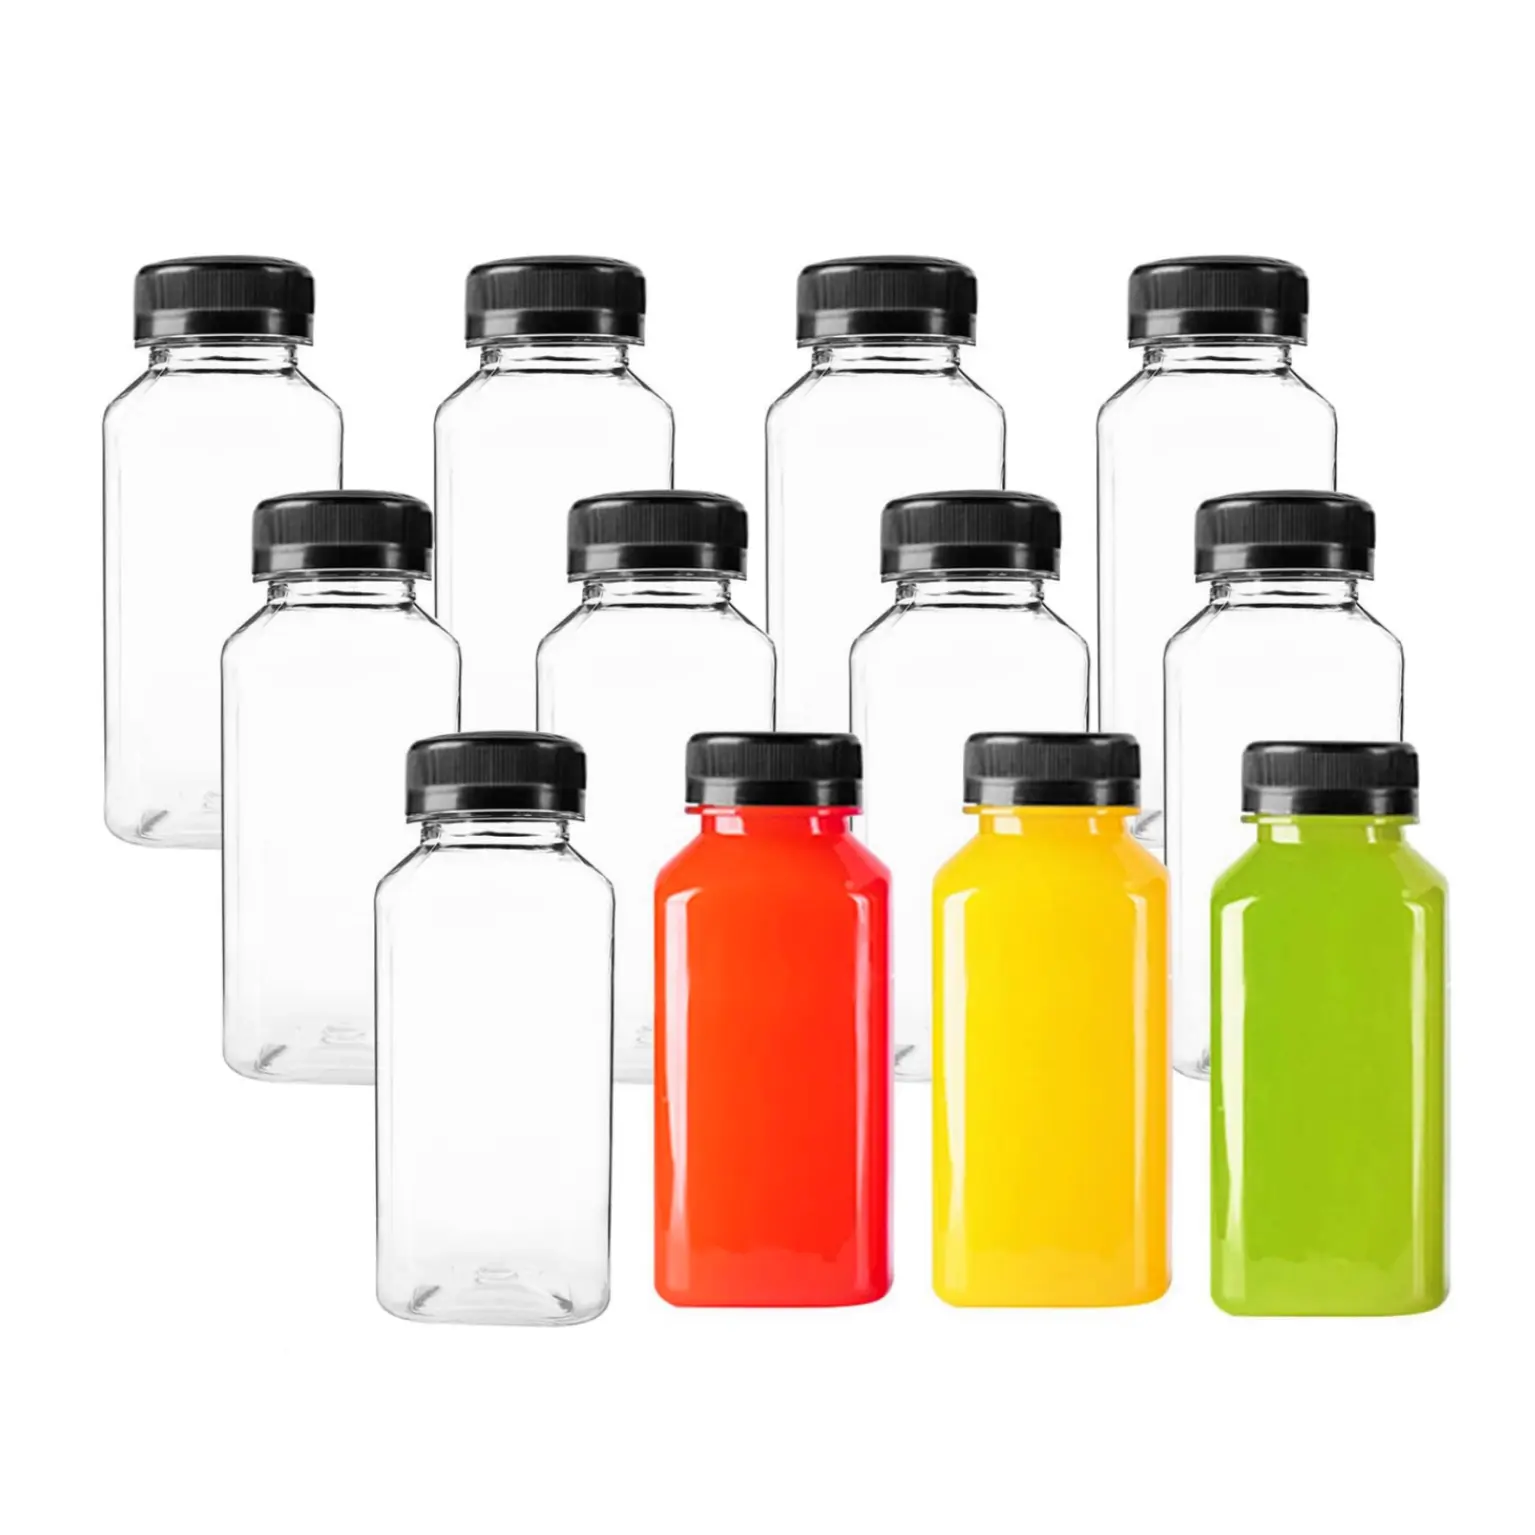 Botellas de jugo de plástico reutilizables con tapas a prueba de fugas, utilizadas para botellas de plástico PET de batidos de bebidas, leche y agua